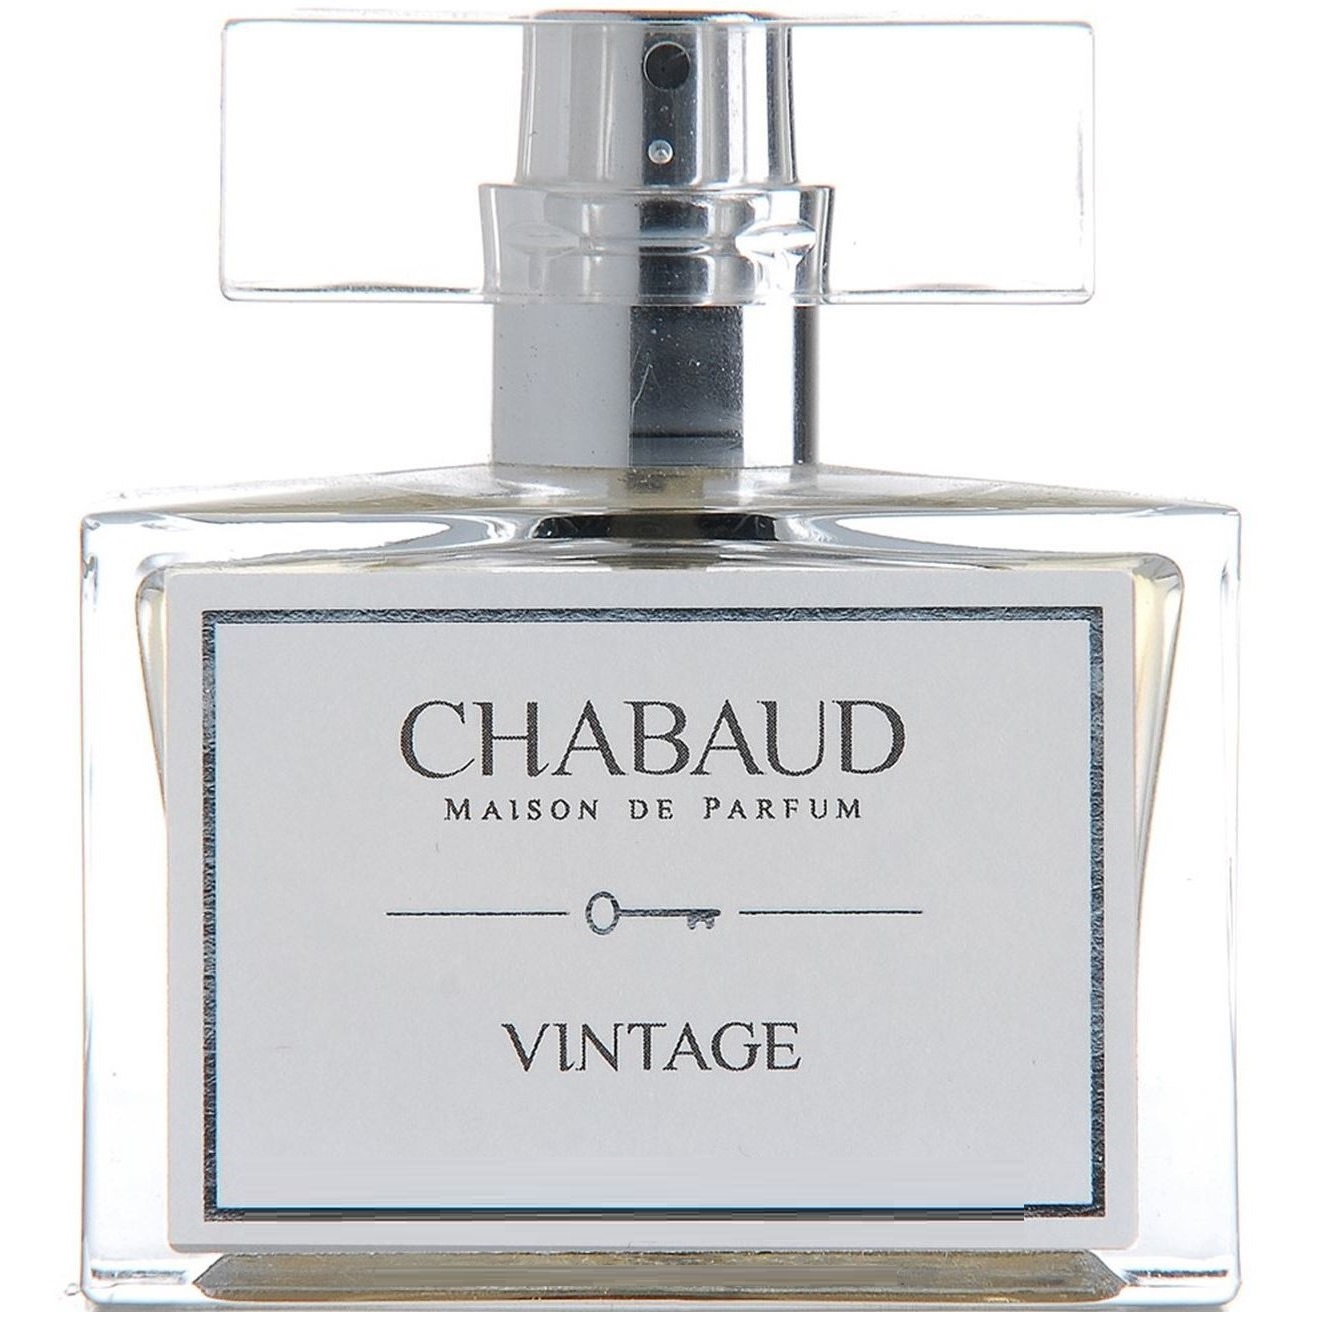 Chabaud Maison de Parfum - Vintage (1.8мл)